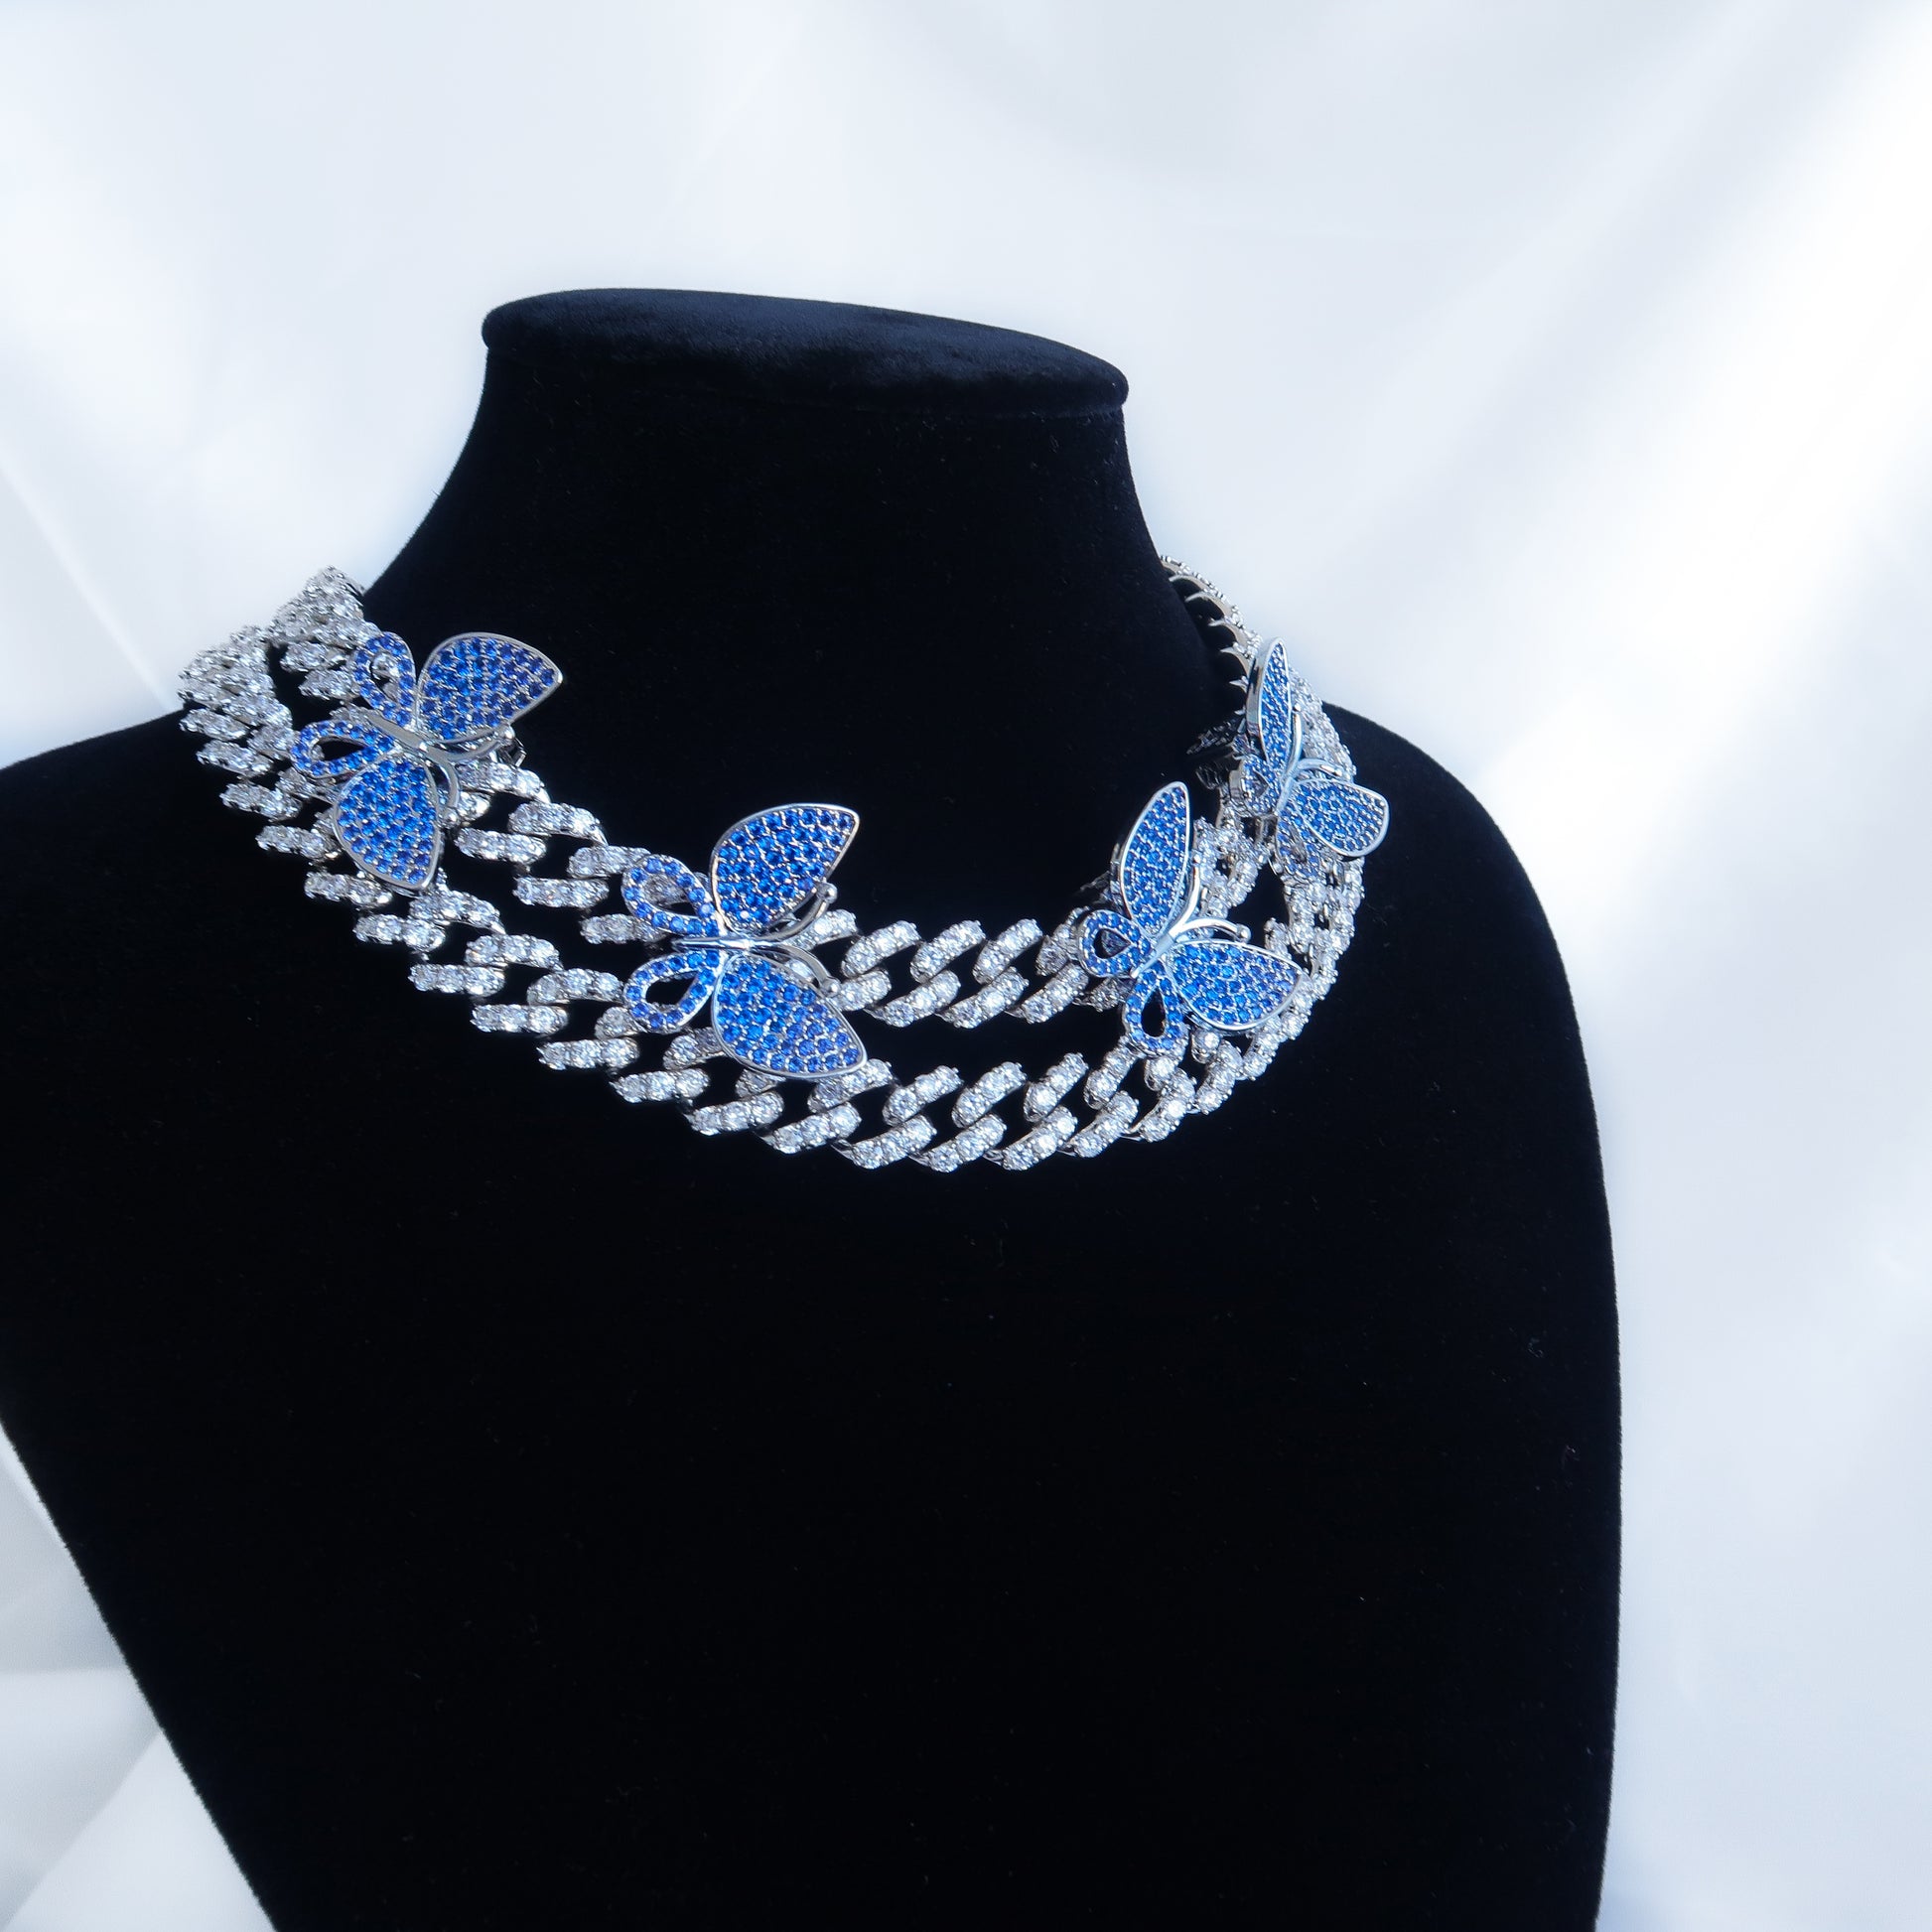 BLUE BUTTERFLY CHAIN - LILÈ - Necklace - LILÈ - online jewellery store - jewelry online - affordable jewellery online Australia